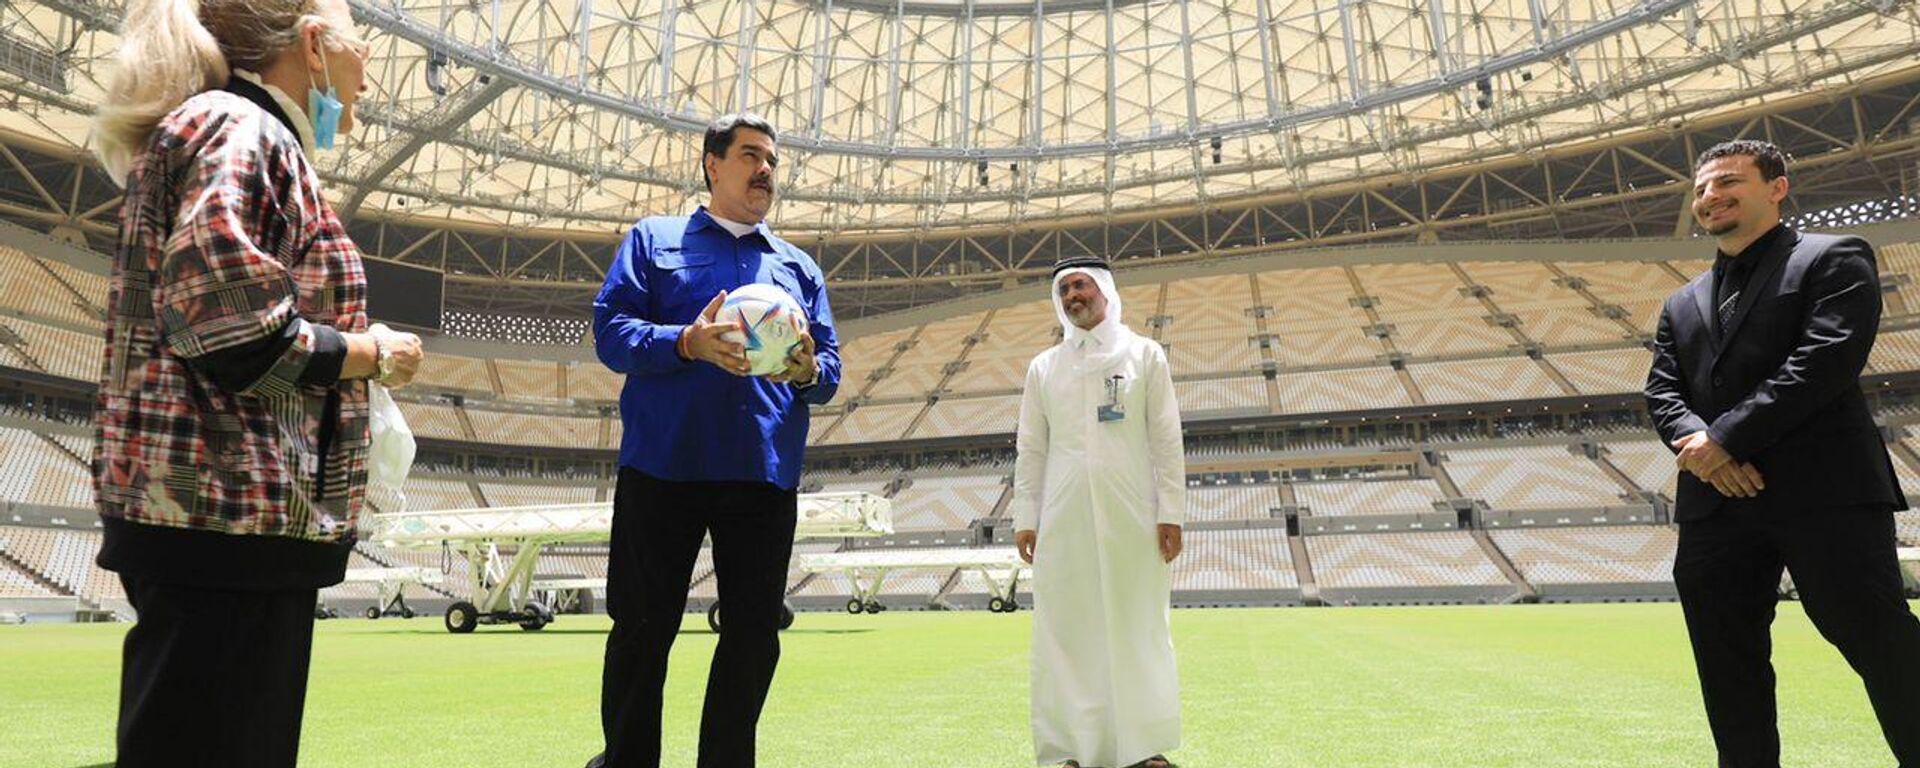 Nicolás Maduro, presidente de Venezuela, visita las instalaciones del estadio Lusail, en Doha, Catar - Sputnik Mundo, 1920, 16.06.2022